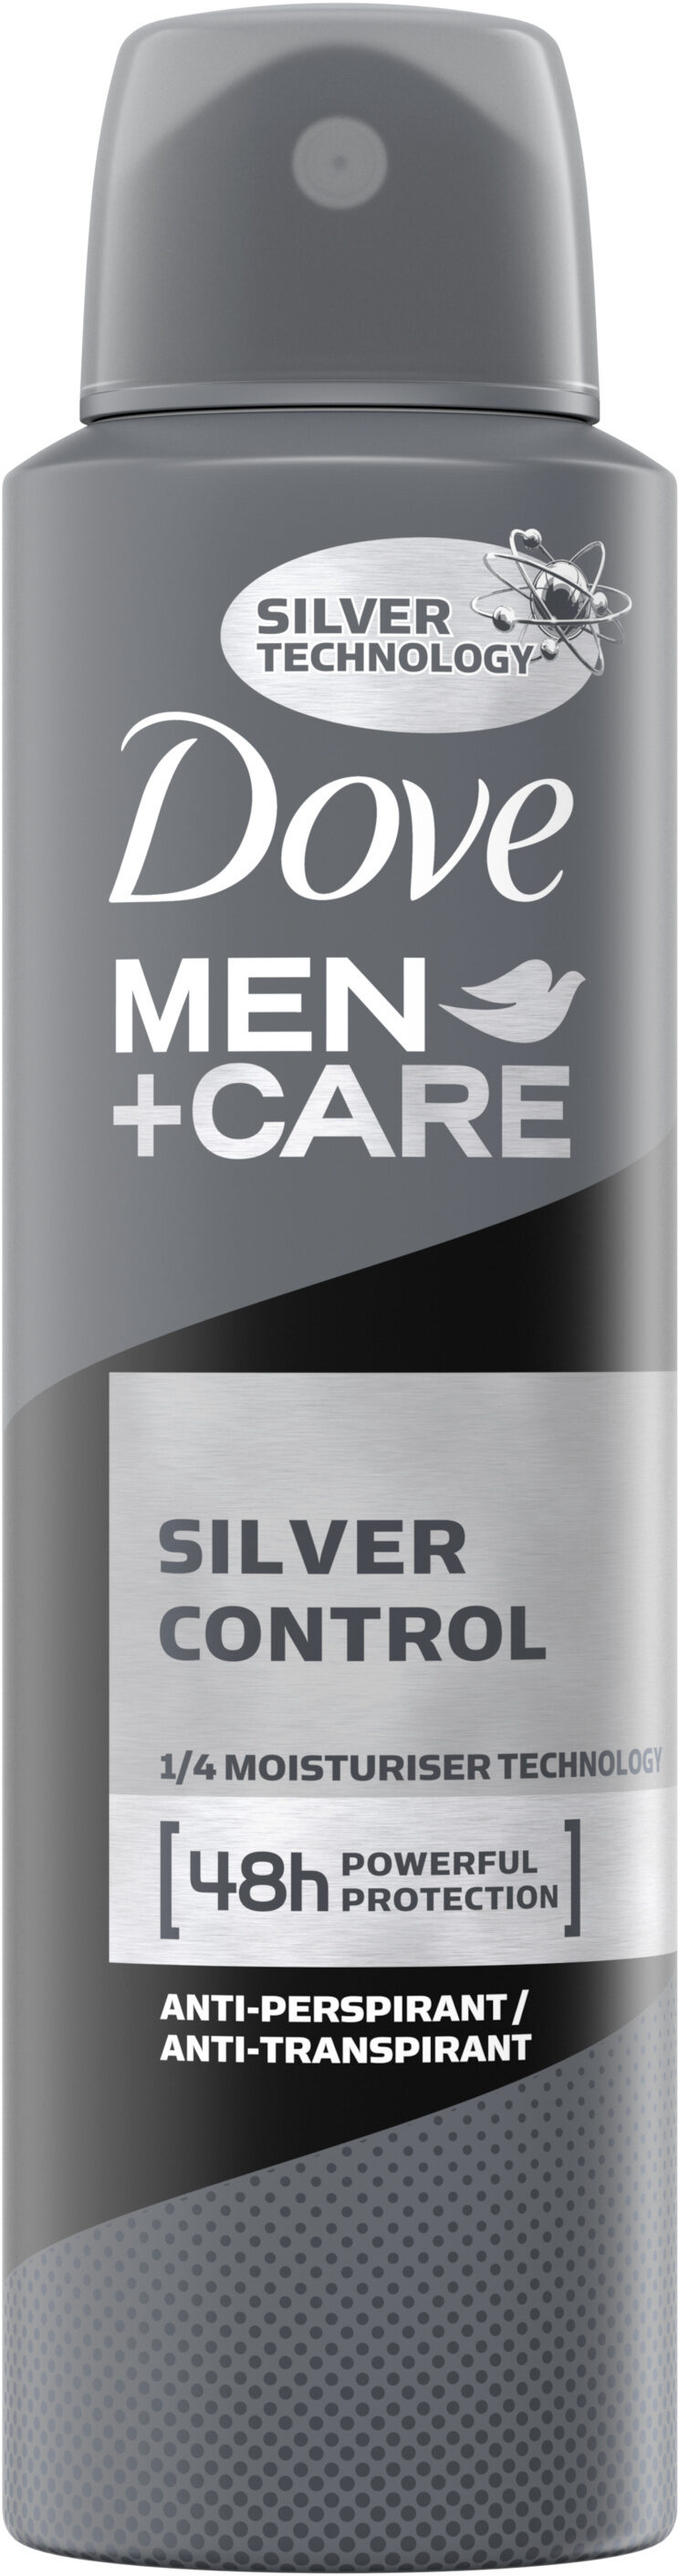 Dove Men+Care Anti transpirant Silver Control 48H Spray - 150 ml